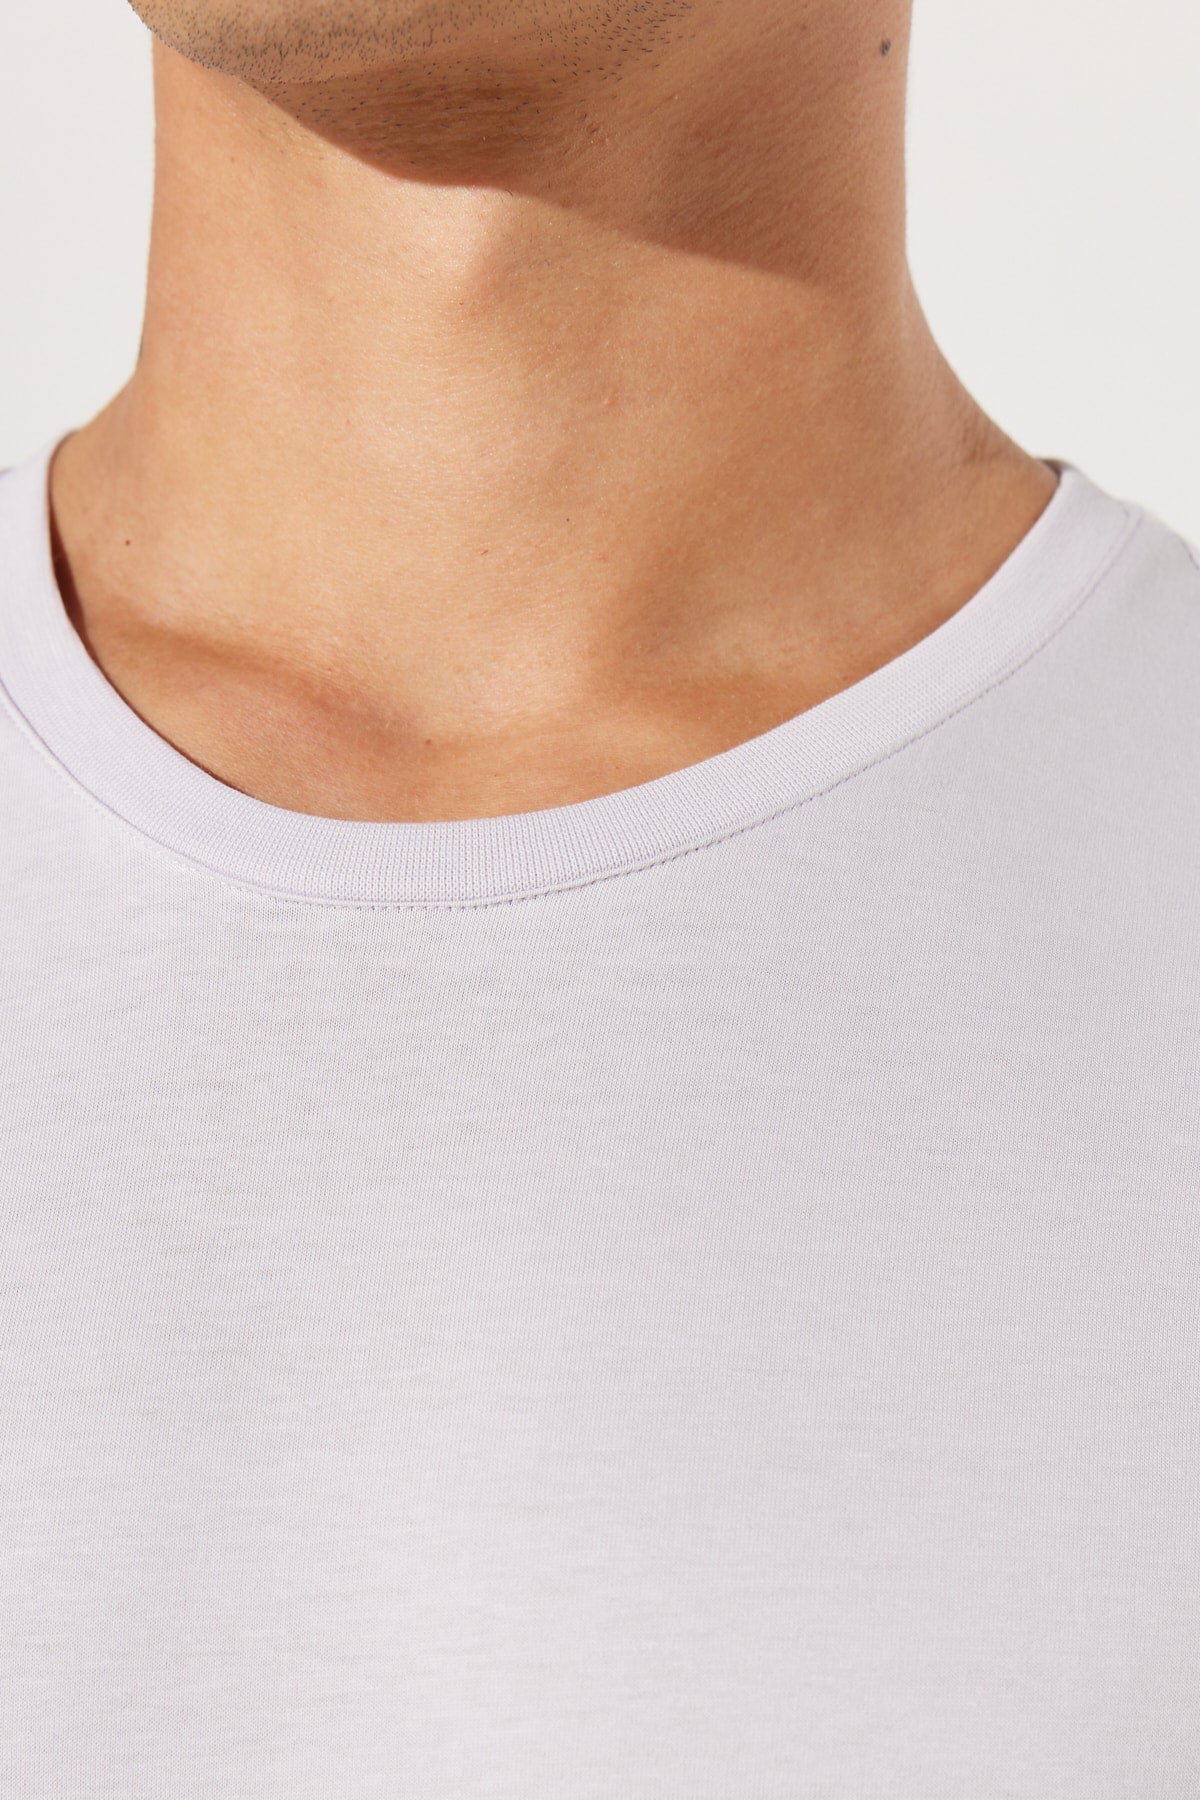  Мужская сиреневая облегающая футболка Slim Fit из 100% хлопка с круглым вырезом и короткими рукавами